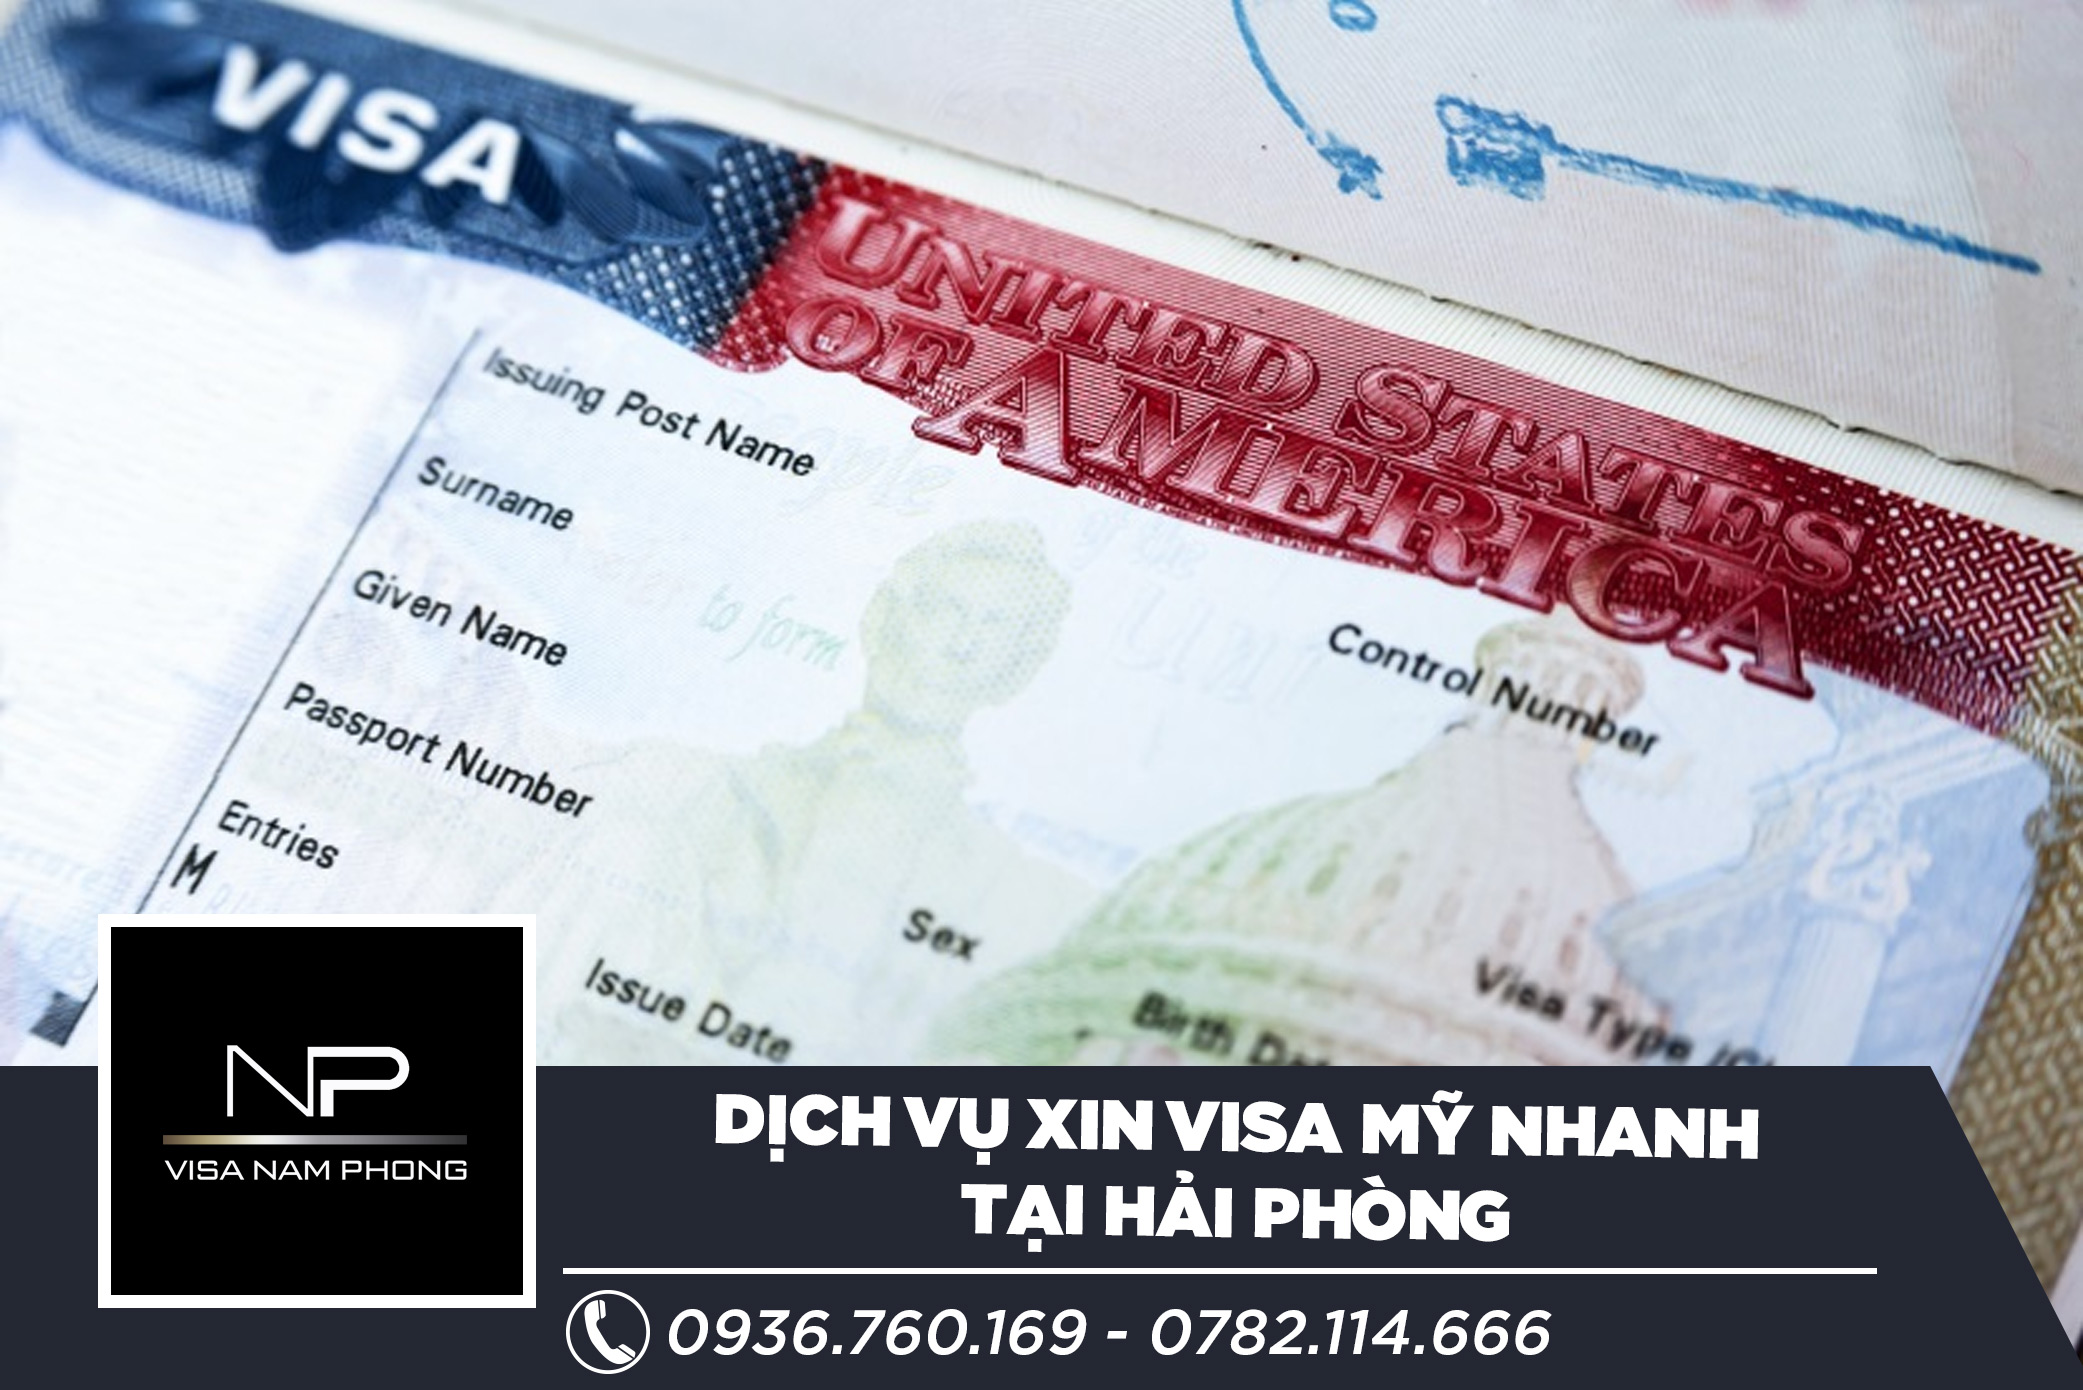 Dịch vụ xin visa Mỹ nhanh tại Hải Phòng